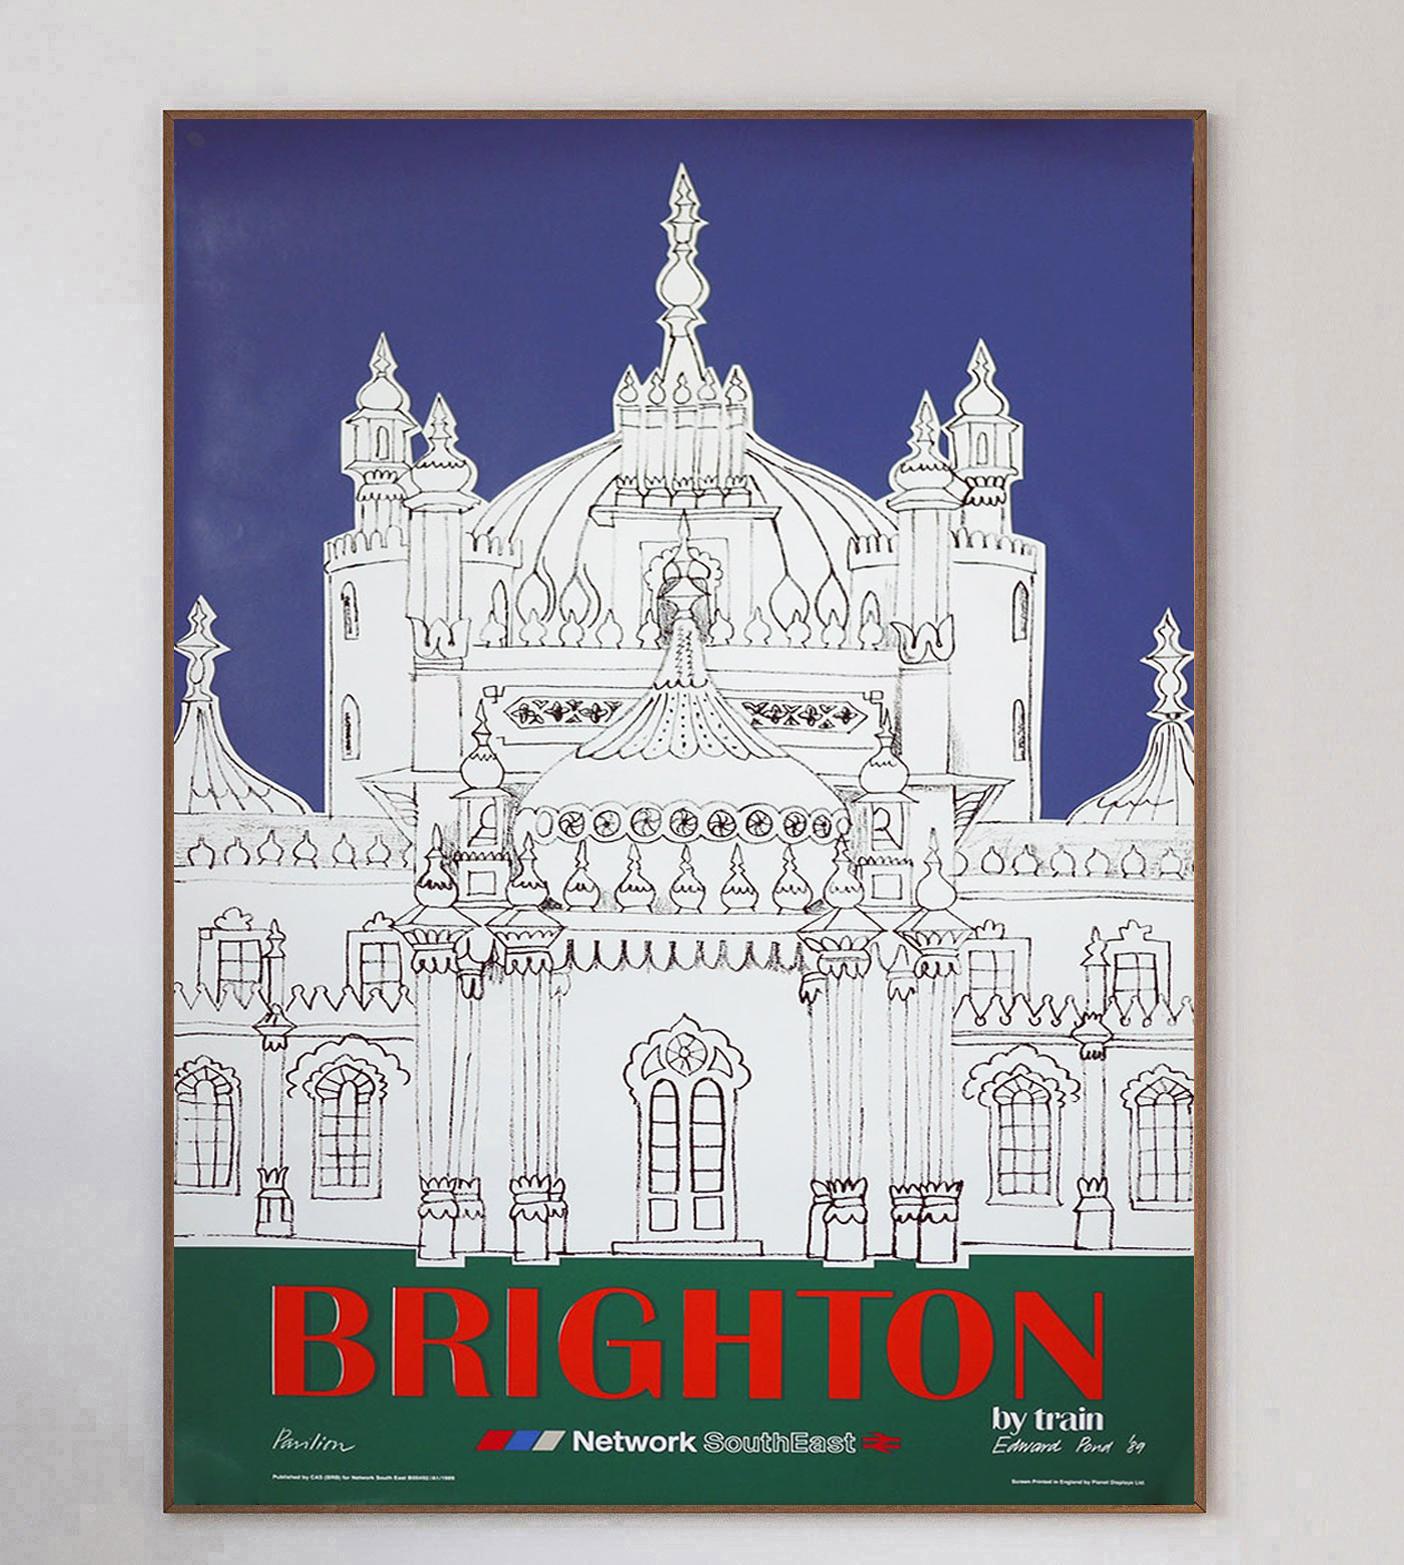 Cette magnifique affiche a été créée en 1989 pour promouvoir le nouveau réseau de la British Railways, la région SouthEast, et les liaisons avec la ville balnéaire de Brighton. Le dessin vibrant représente le célèbre Royal Pavilion et a été conçu